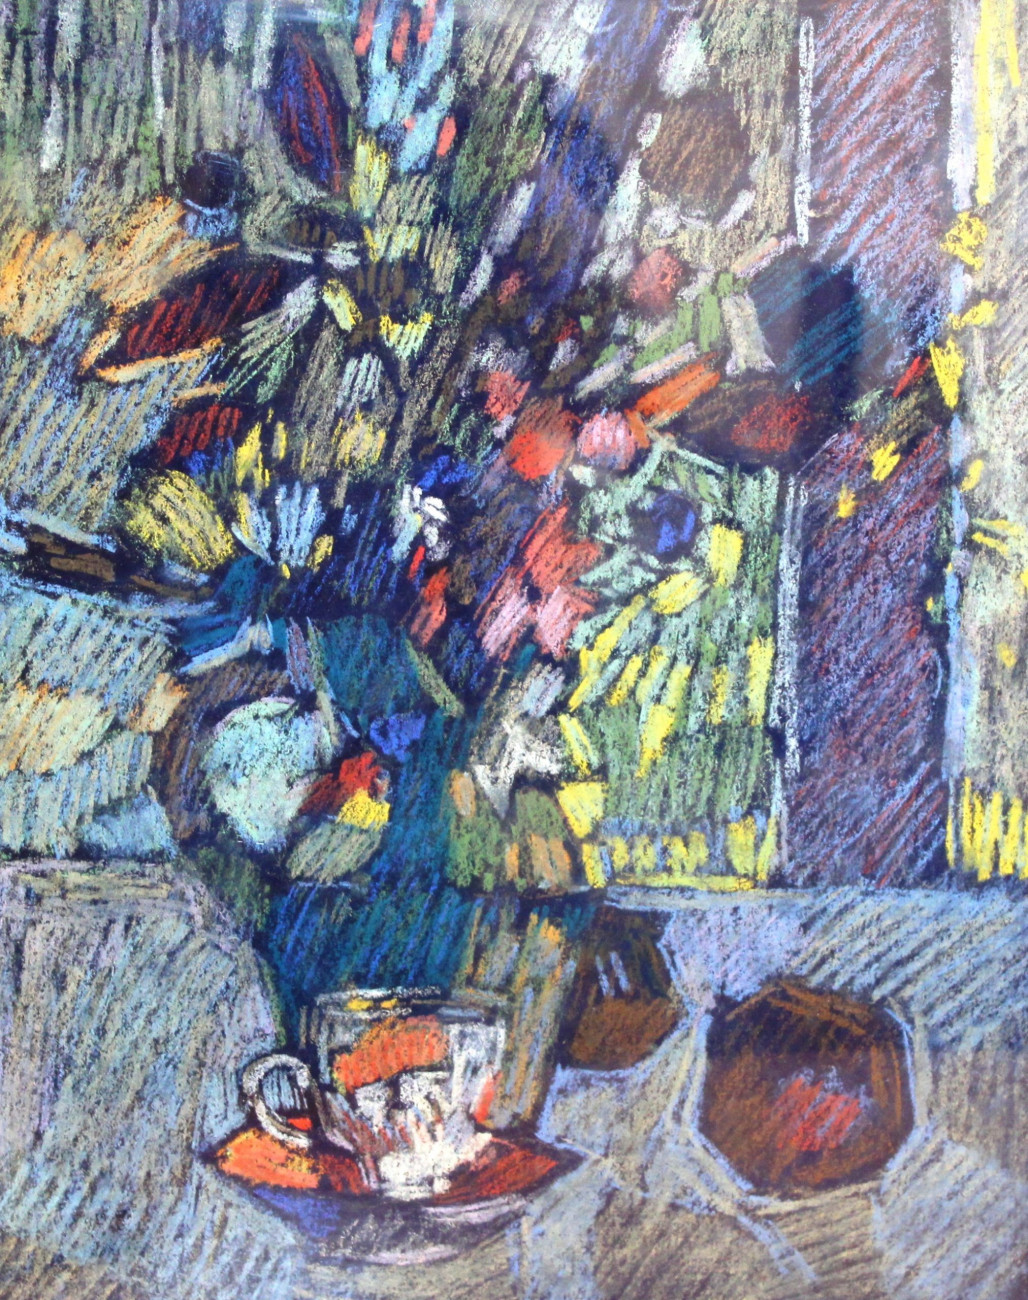 Картина «Чайная чашечка». Бумага, пастель, рисунок. 31 х 25 см. Вологодская обл., г. Череповец. 1990 — 2000 гг. БОКМ-6803/9 Г-232.